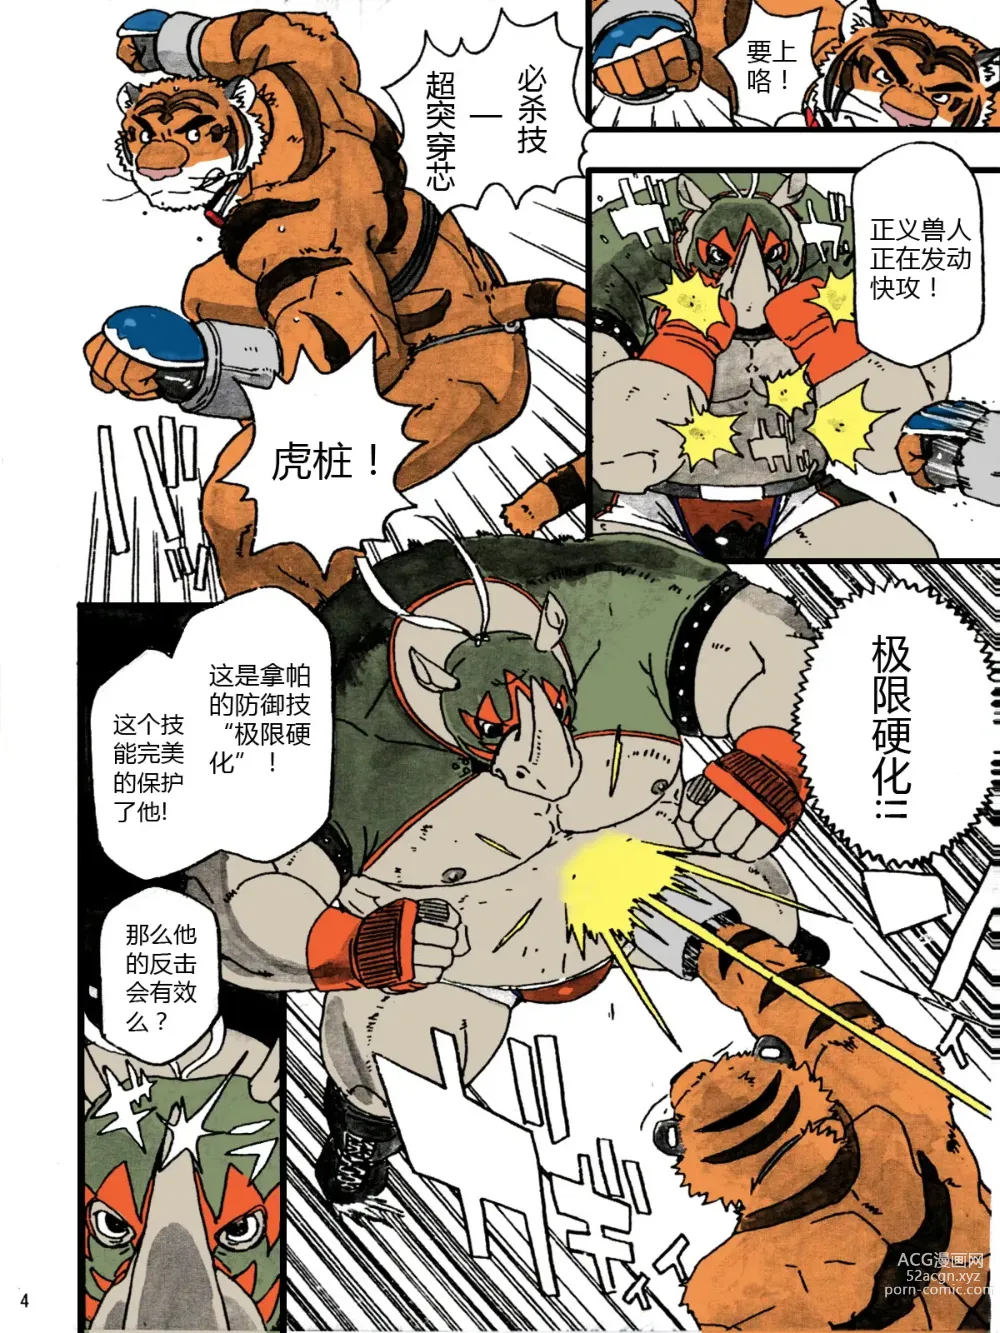 Page 6 of doujinshi Choujuu Gasshin Build Tiger 7